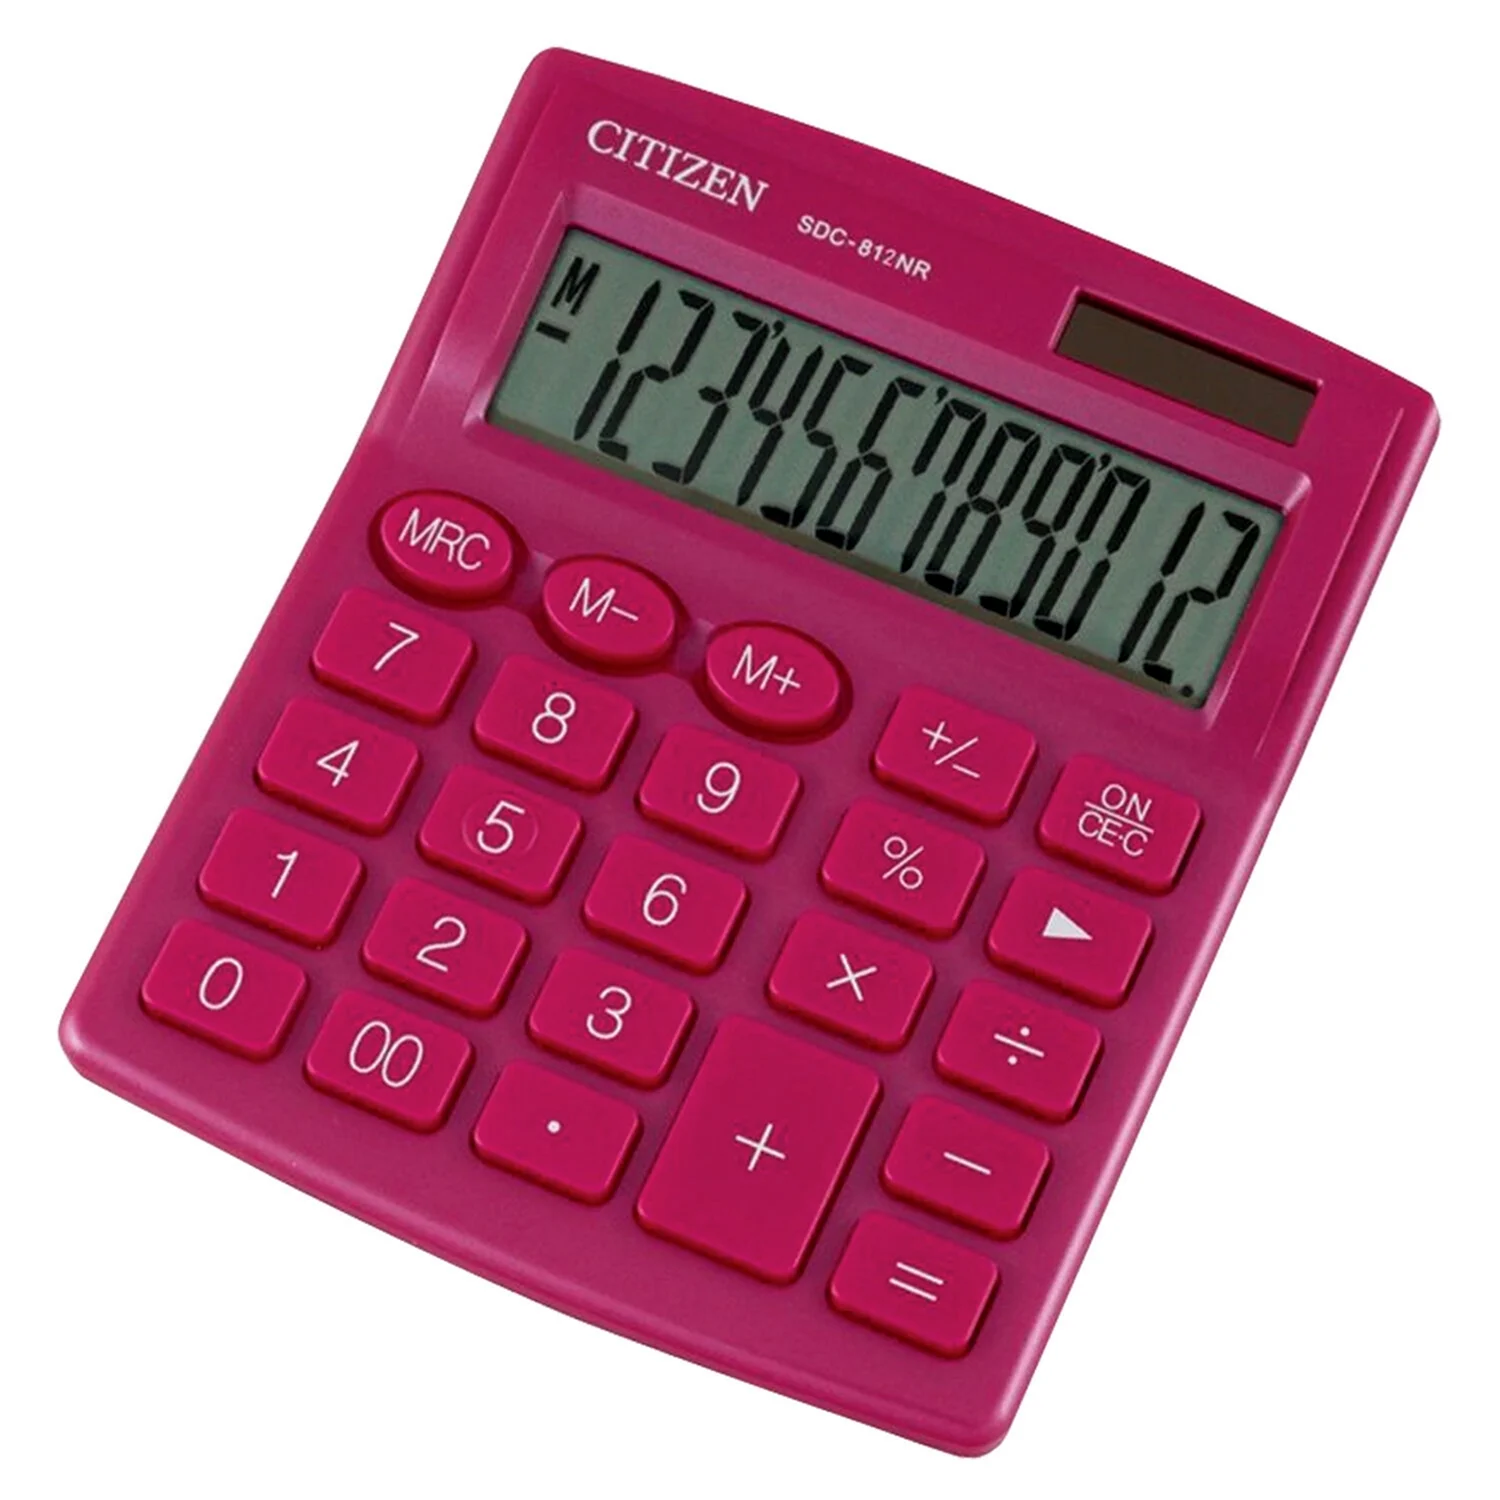 Калькулятор Citizen SDC-812nr